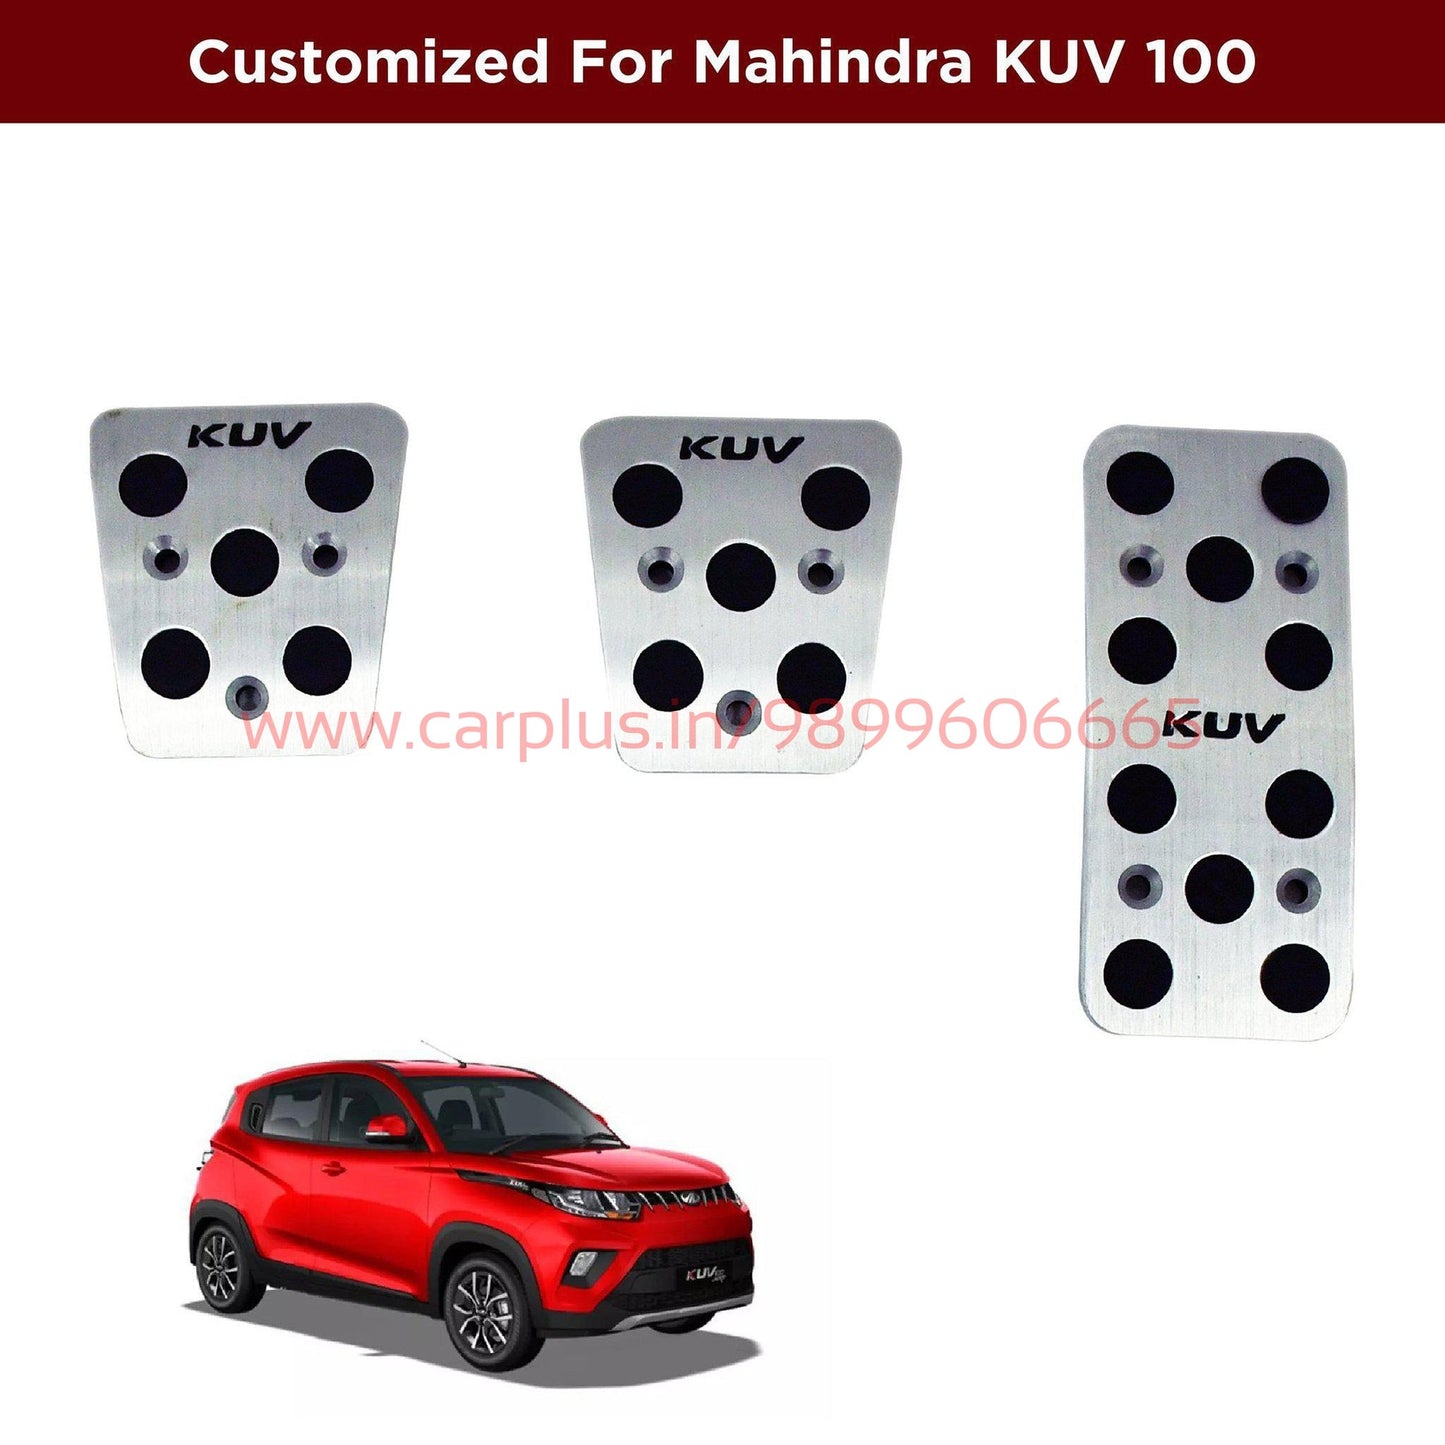 
                  
                    KMH Pedal Kit For Mahindra KUV 100 KMH-PEDAL KIT PEDAL KIT.
                  
                